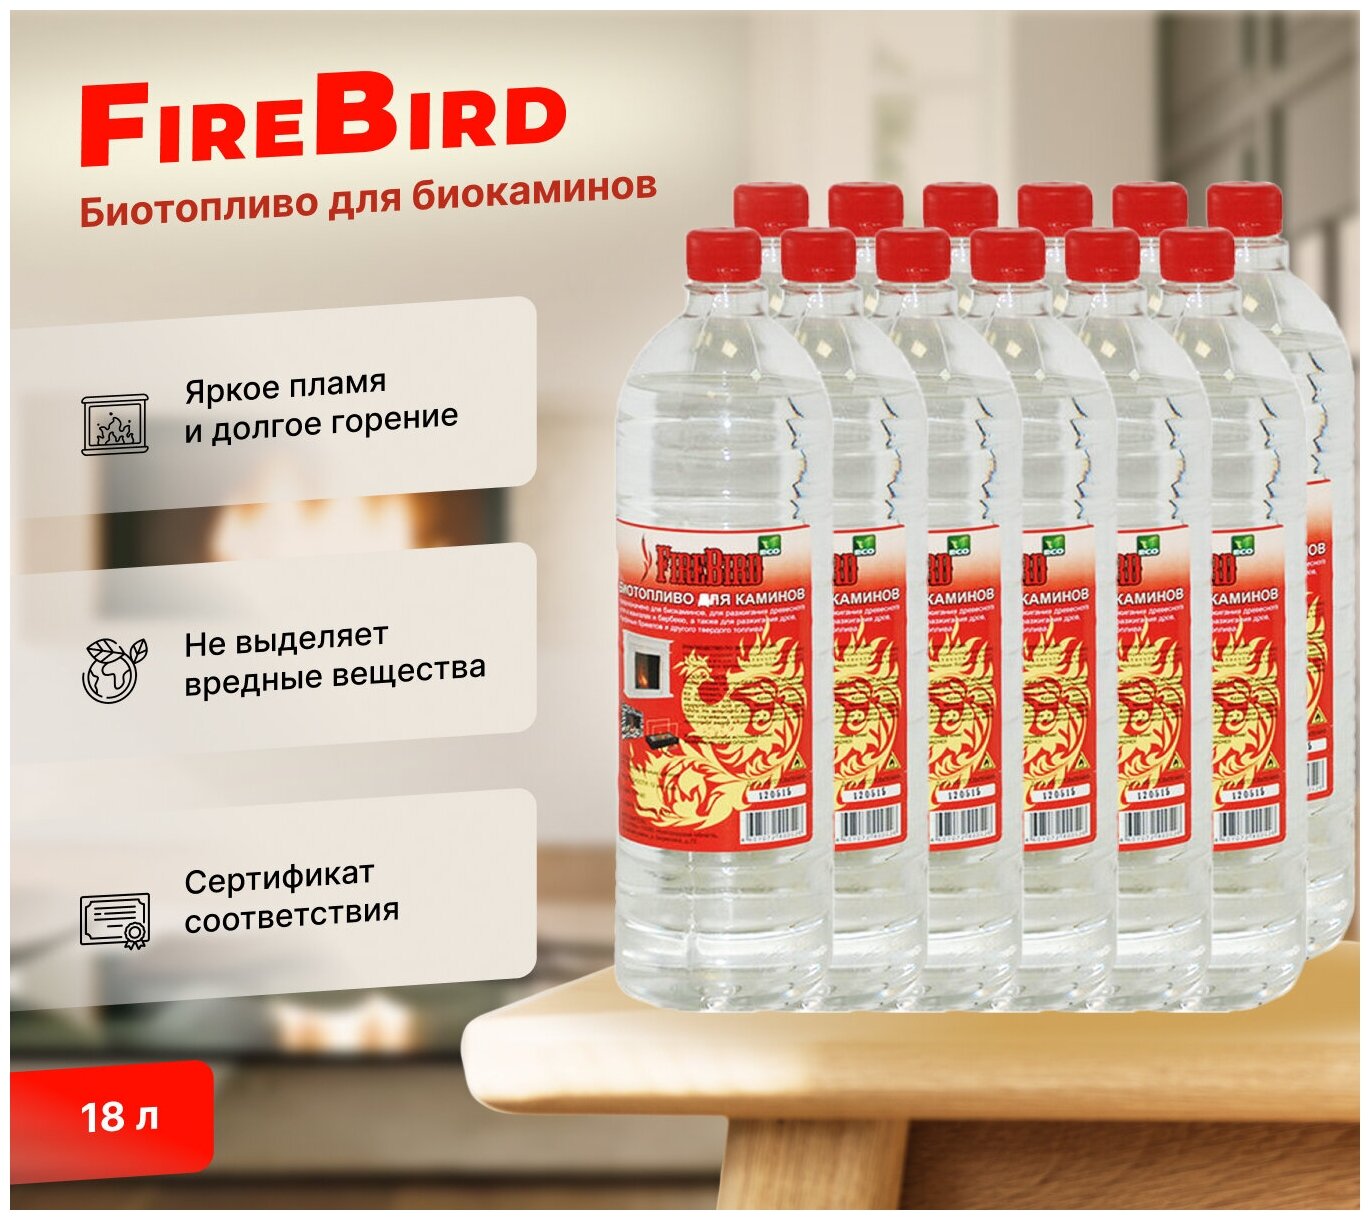 Биотопливо для биокаминов FireBird 18 литров